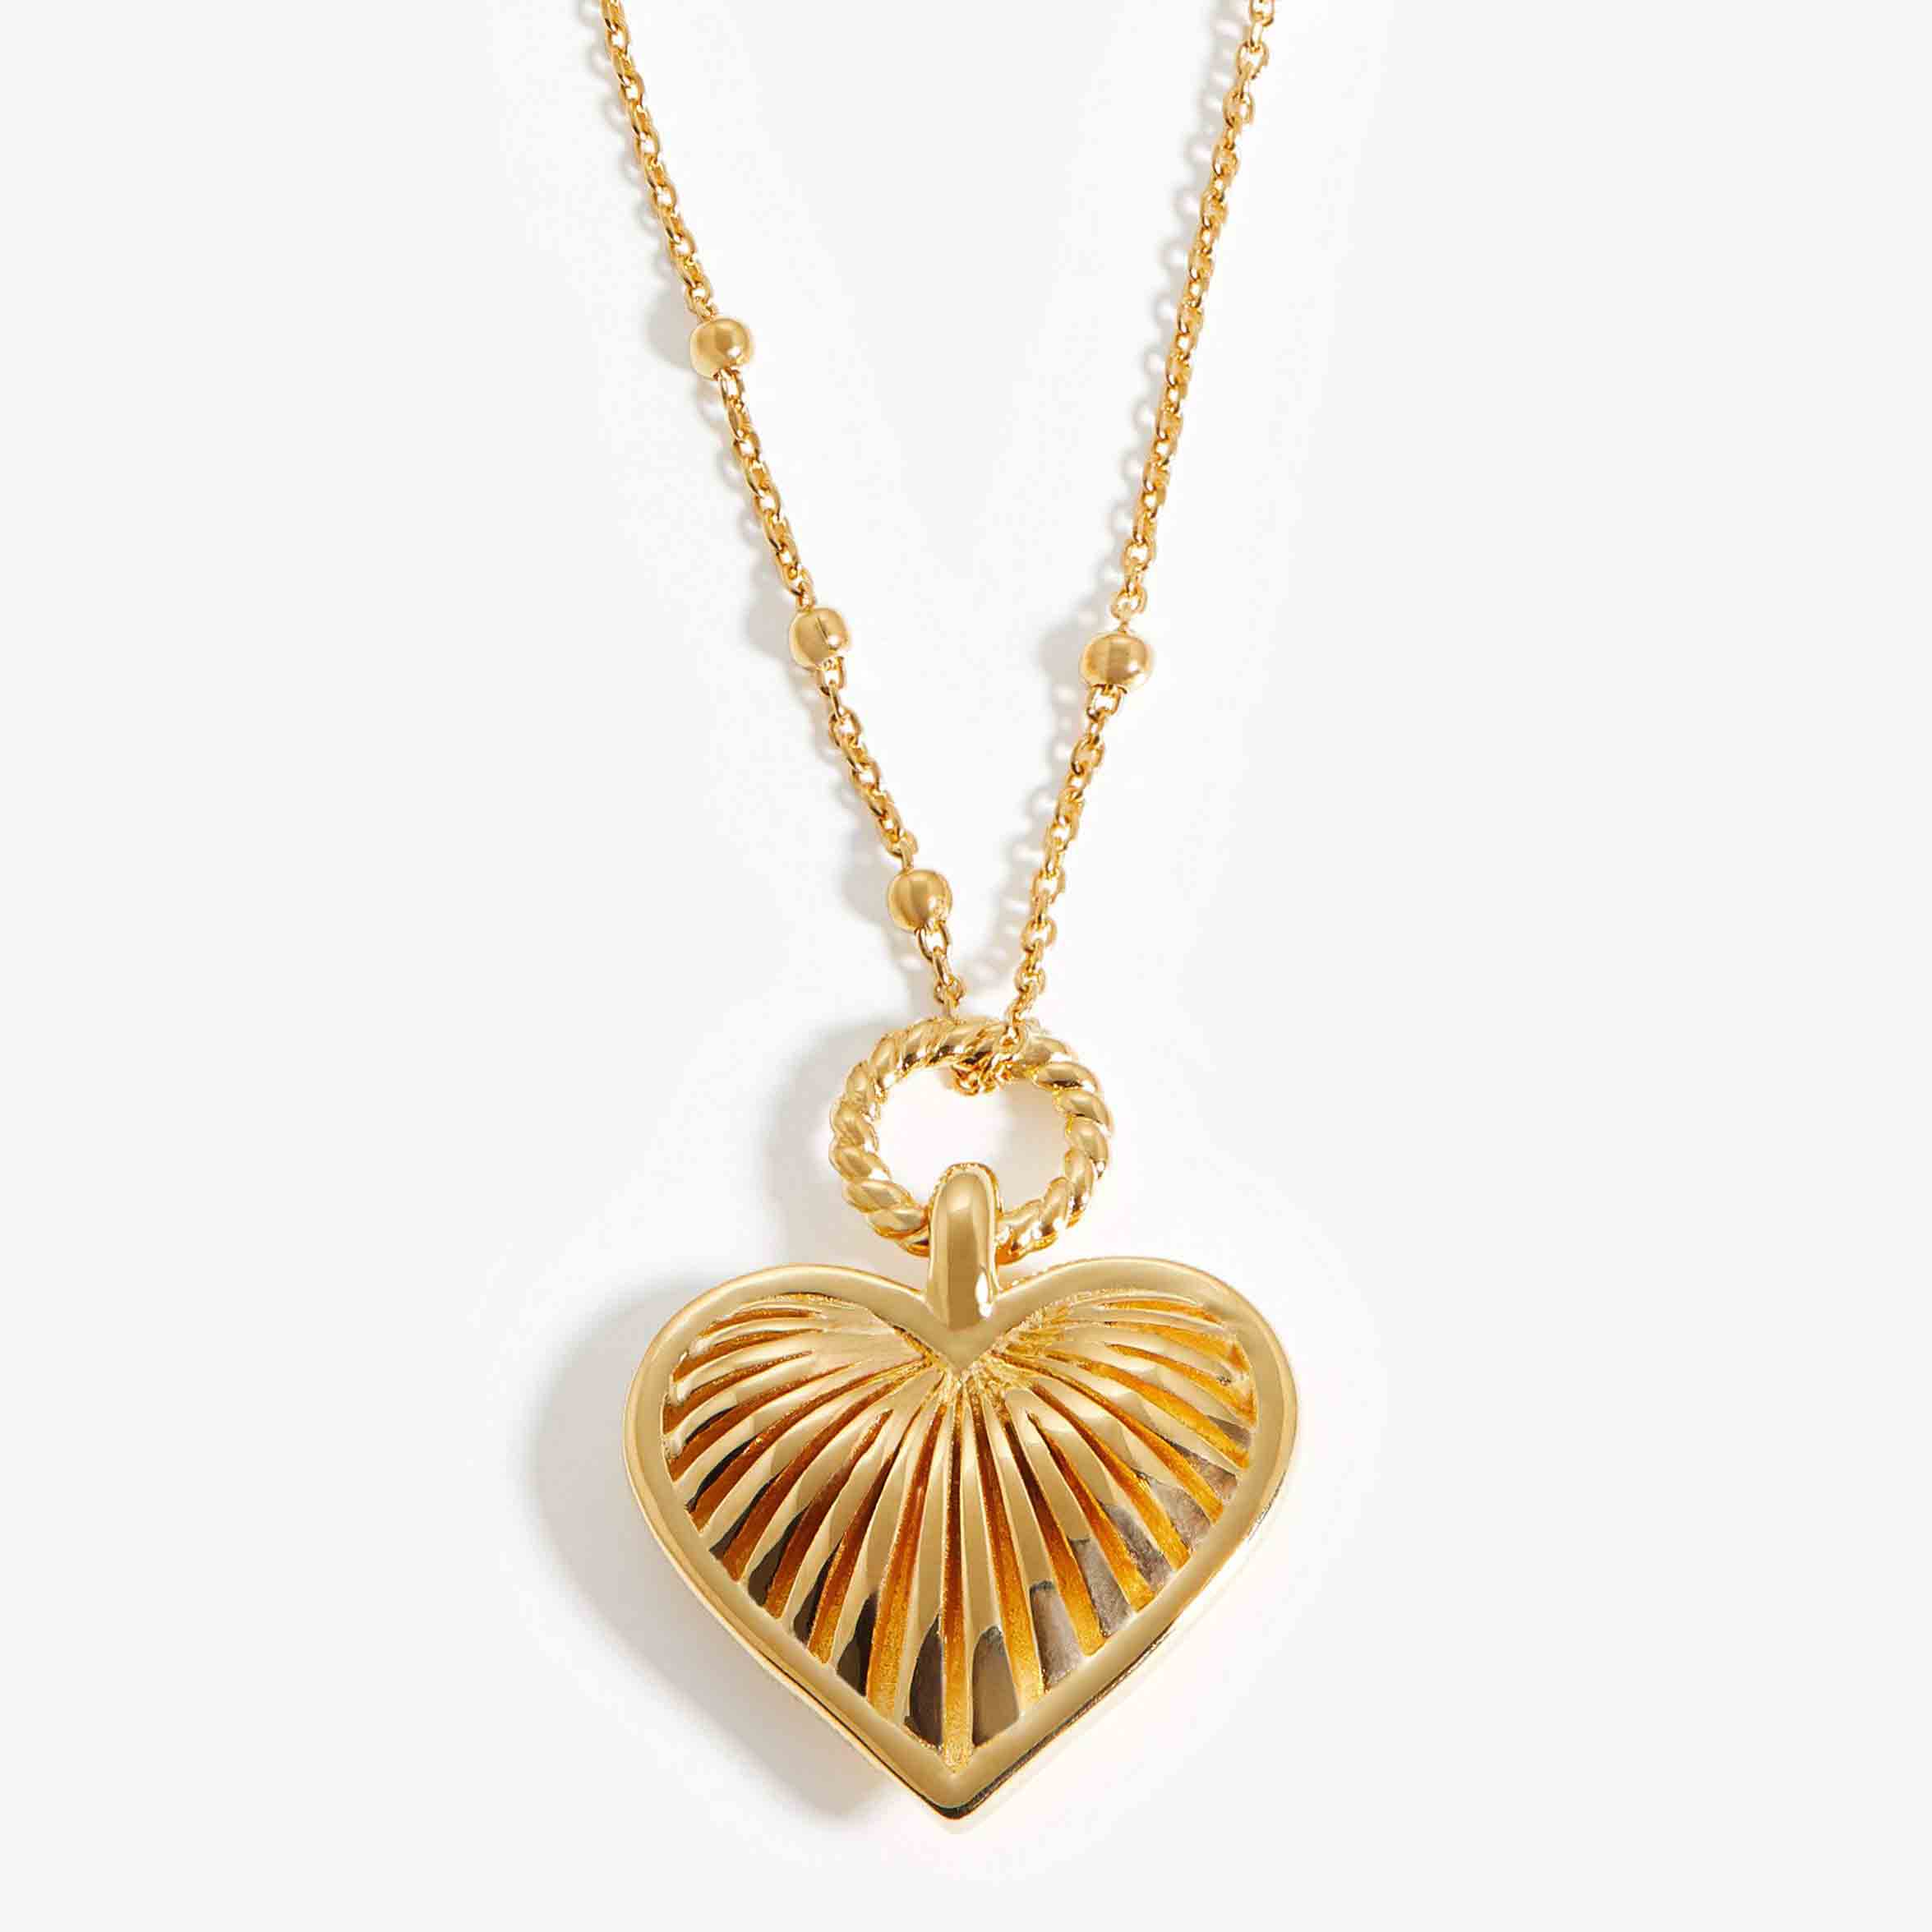 Producent biżuterii ze złota Vermeil produkuje naszyjnik z zawieszką w kształcie serca ze srebra platerowanego 18-karatowym złotem